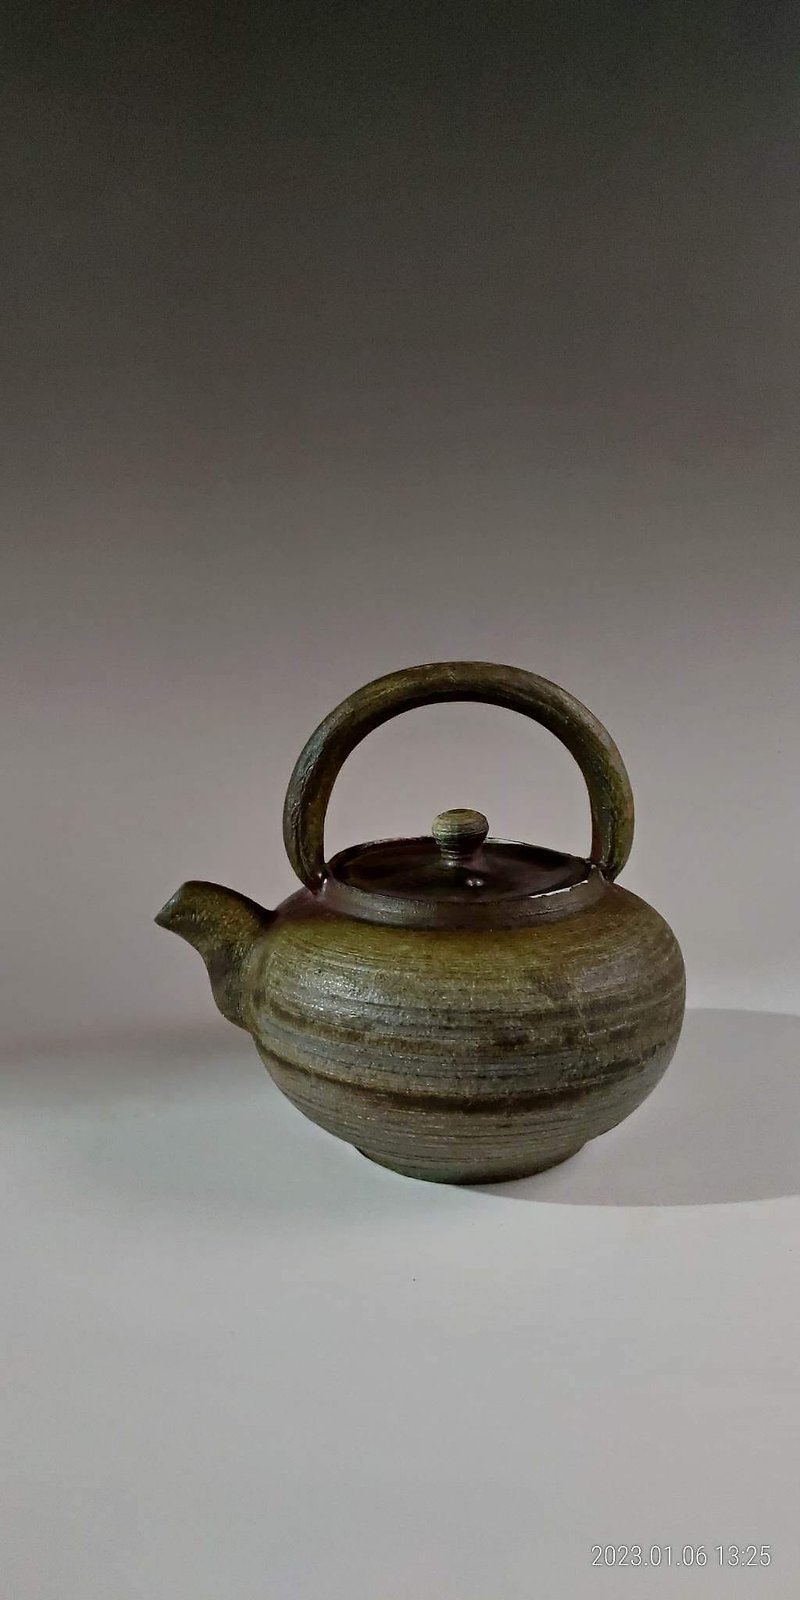 firewood teapot - Teapots & Teacups - Pottery 